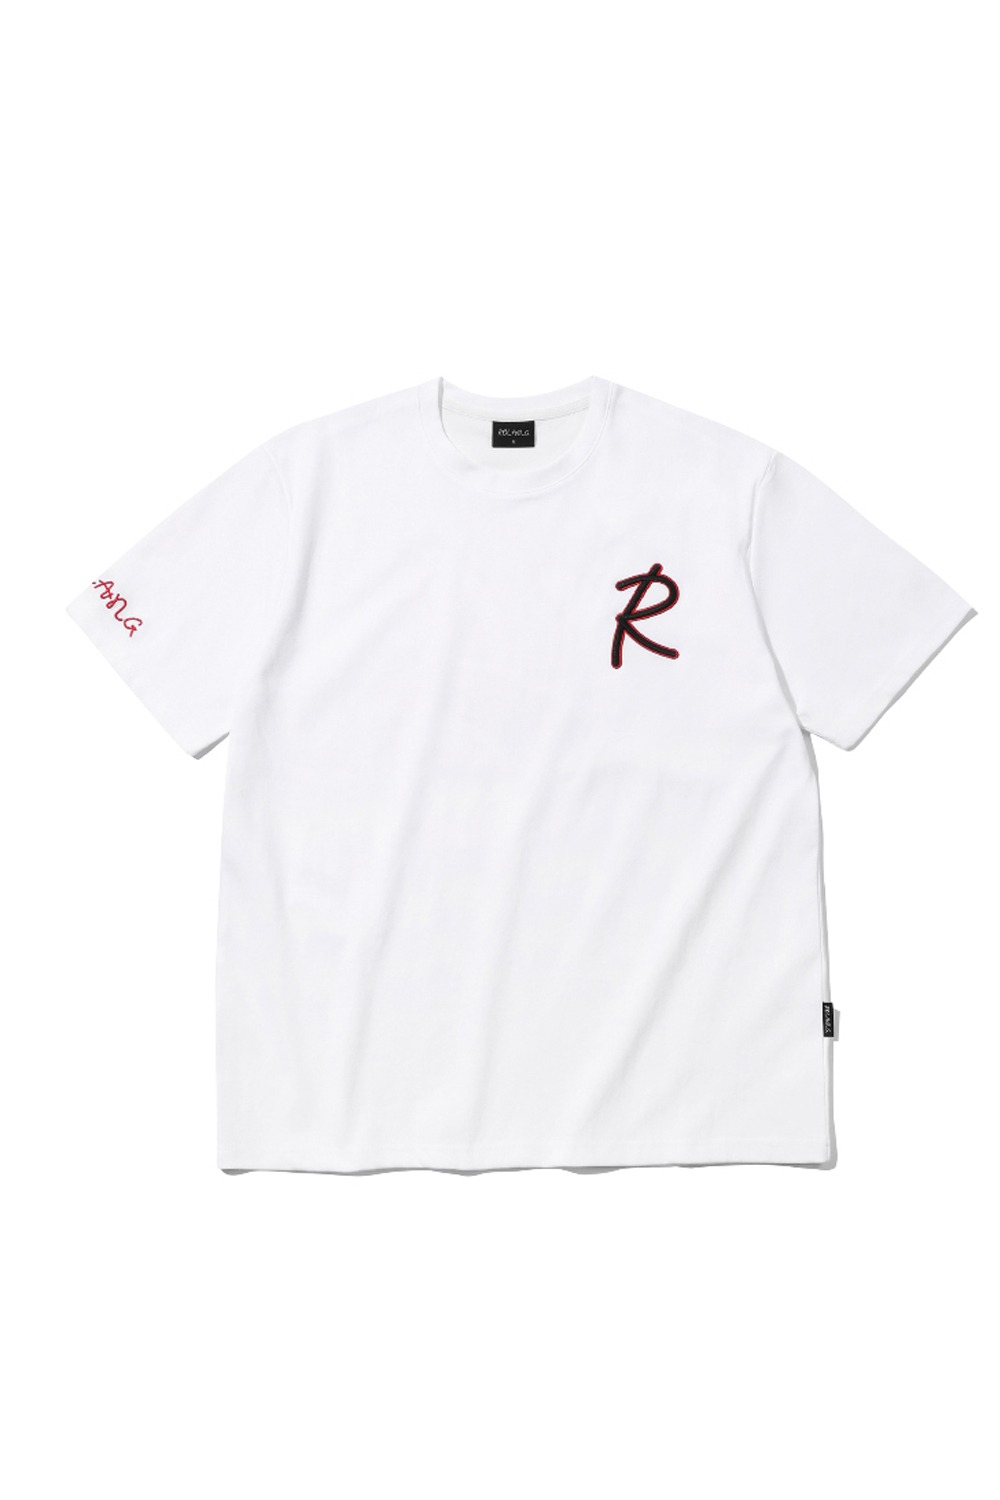 [WOMEN] 로랑 에센셜 R 티셔츠 (레드) - 리치즈 RICHEZ